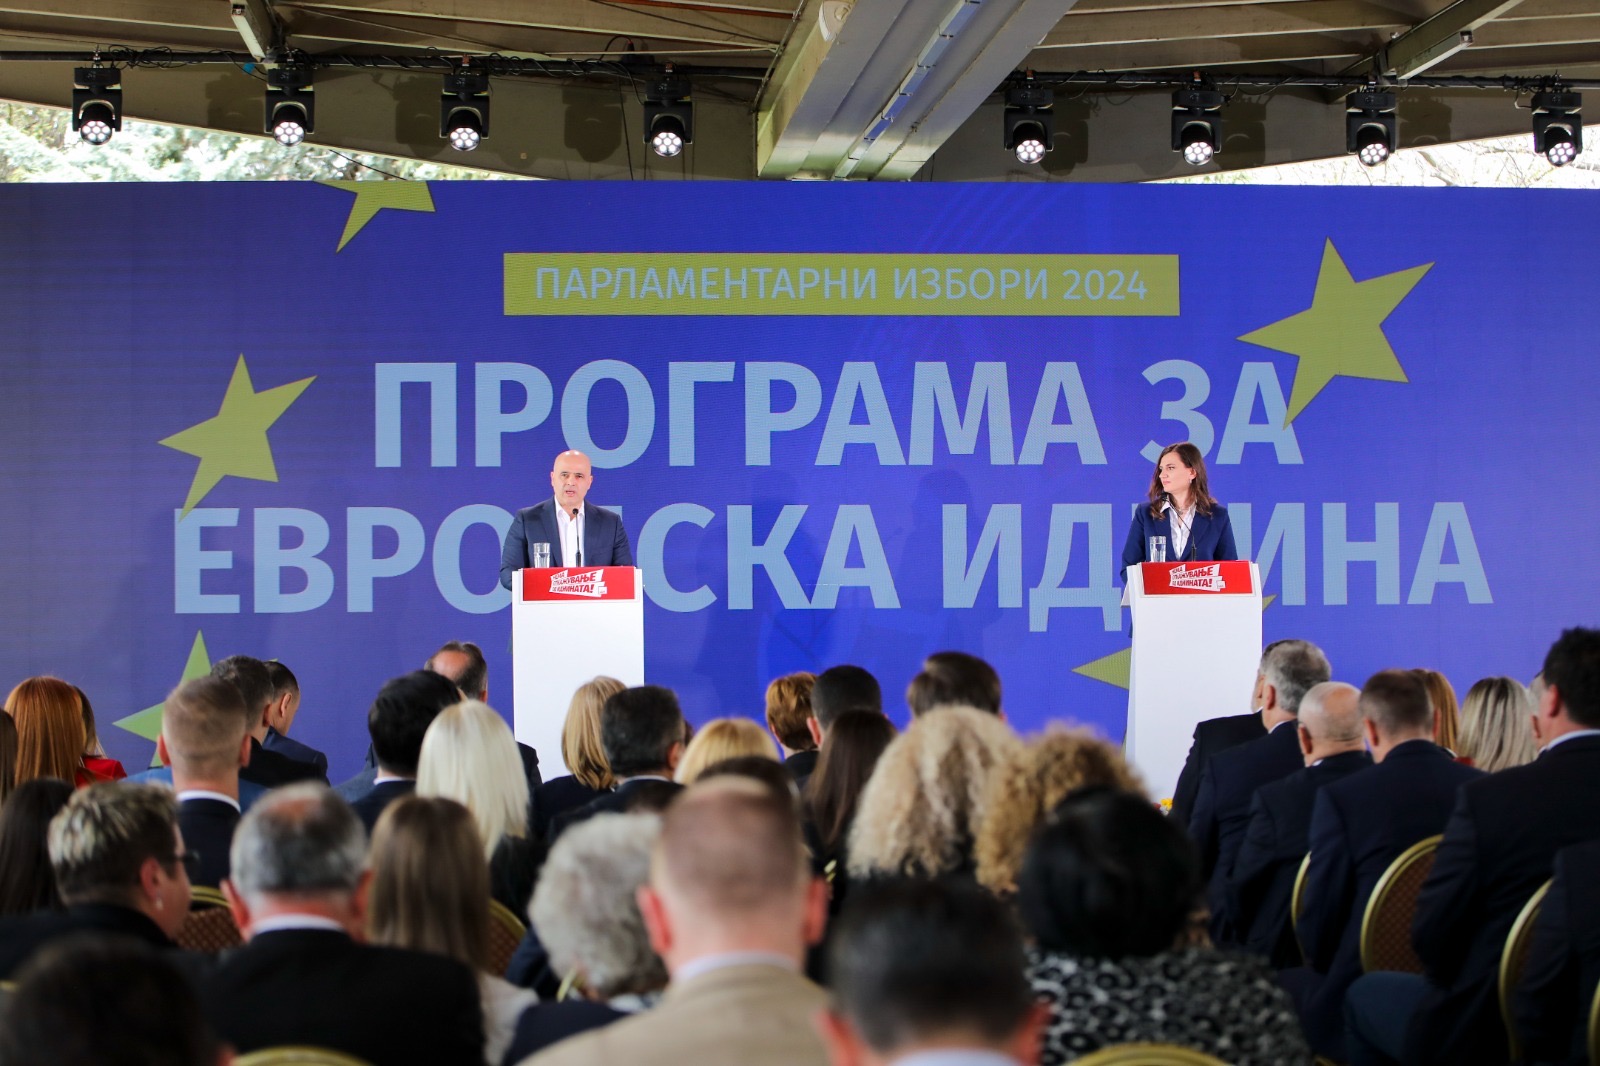 SDSM öncülüğündeki Avrupa Geleceği Koalisyonu’nun milletvekili adayları tanıtıldı